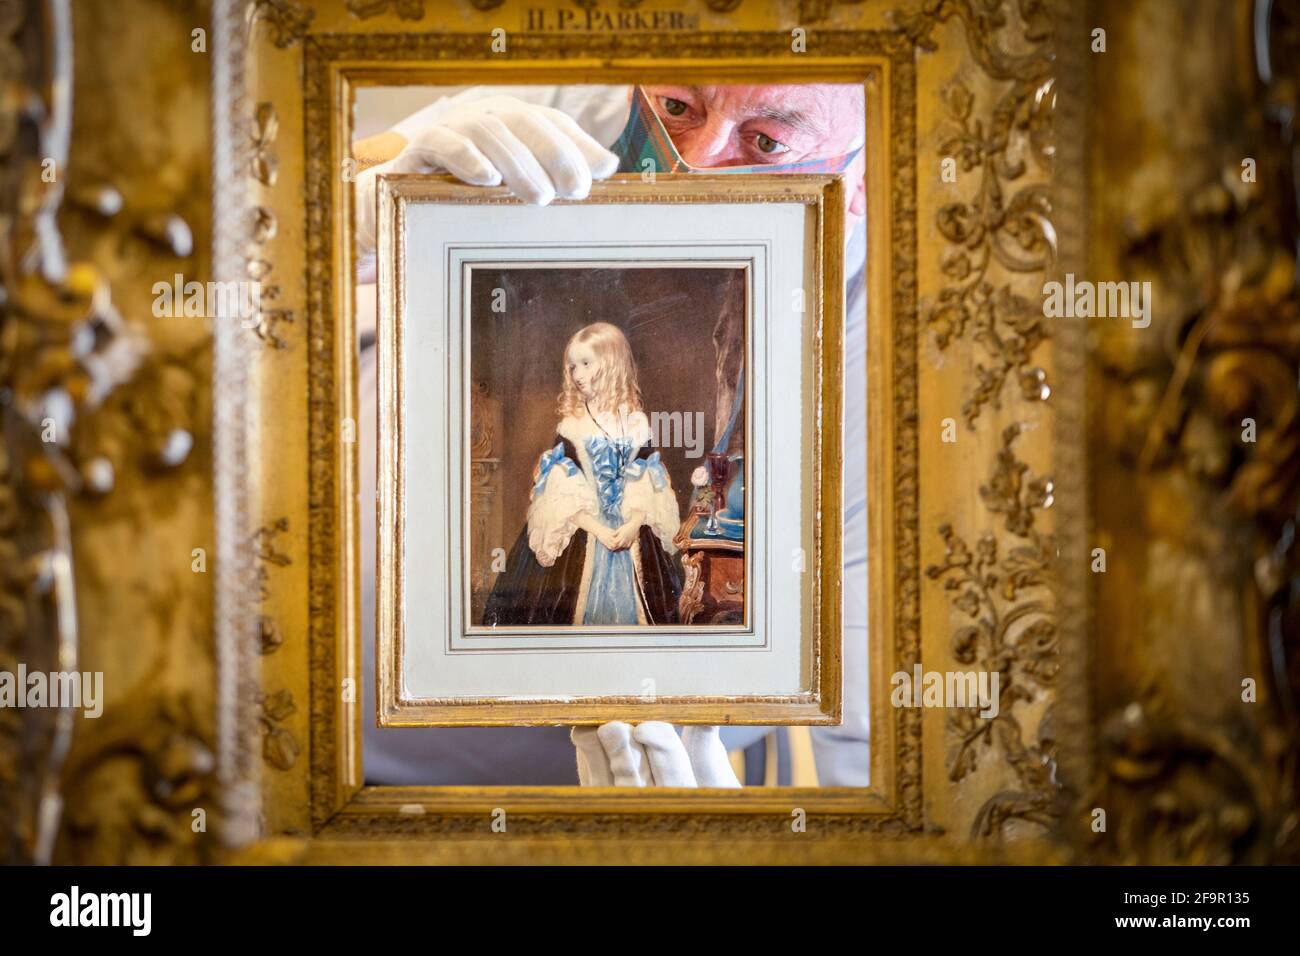 Danny McIlwraith untersucht ein Aquarell von Lady Elizabeth Leveson-Gower aus dem 19. Jahrhundert des Künstlers John Bostock, das im Bonhams Edinburgh während des Dunrobin Attic Sale, einer Auktion von Hunderten von Gegenständen, die in den Dachböden und Kellern des Dunrobin Castle in Sutherland gefunden wurden, ausgestellt wird. Der Familiensitz des 25. Earl of Sutherland. Bilddatum: Dienstag, 20. April 2021. Stockfoto